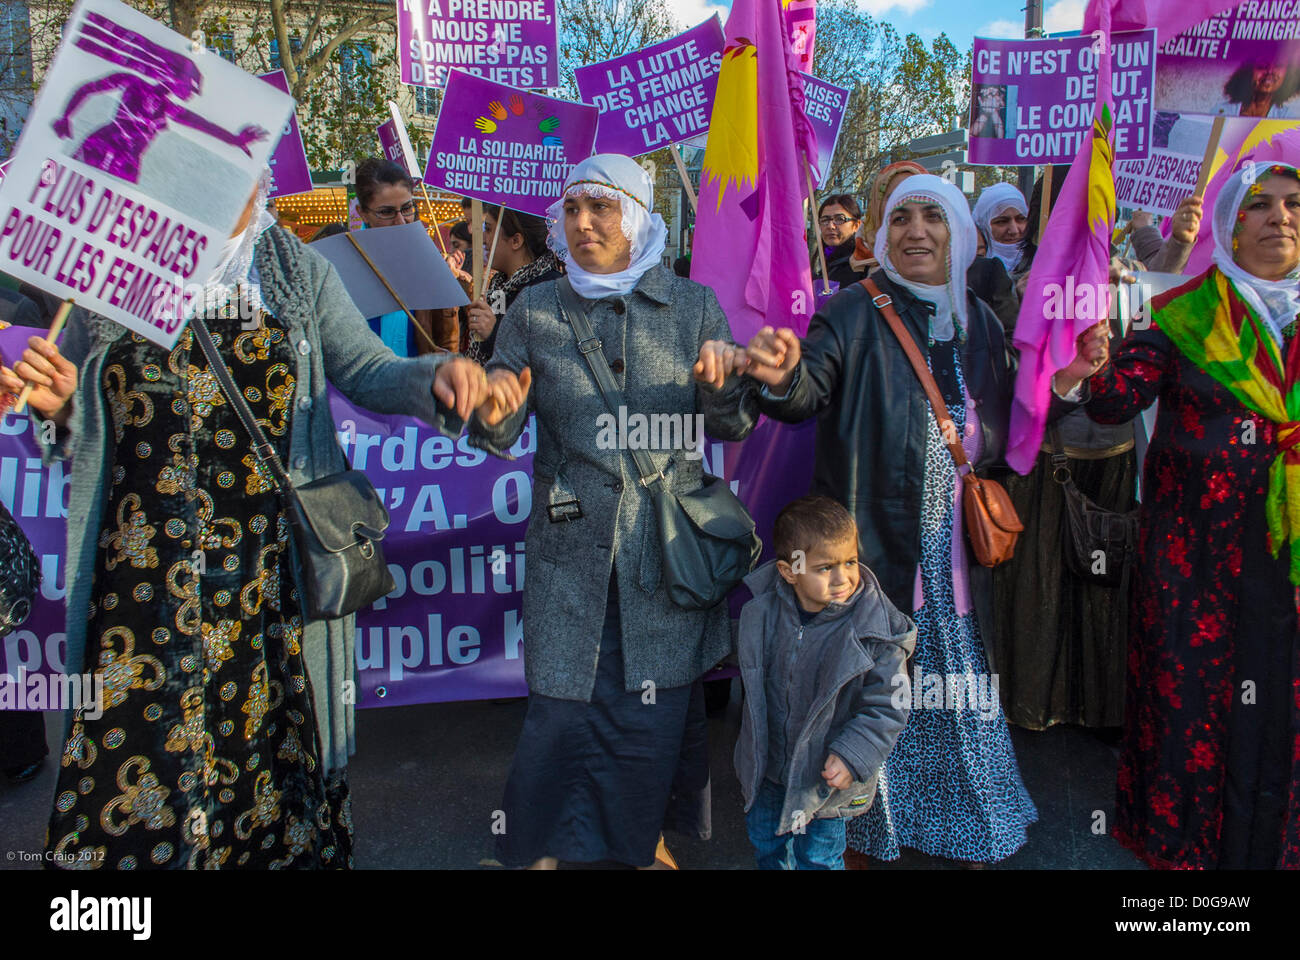 Paris, France, différents groupes féministes ont organisé une marche contre la violence à l'égard des femmes, Journée internationale des droits des femmes, égalité des femmes, protestation contre les droits des femmes, femmes kurdes Banque D'Images